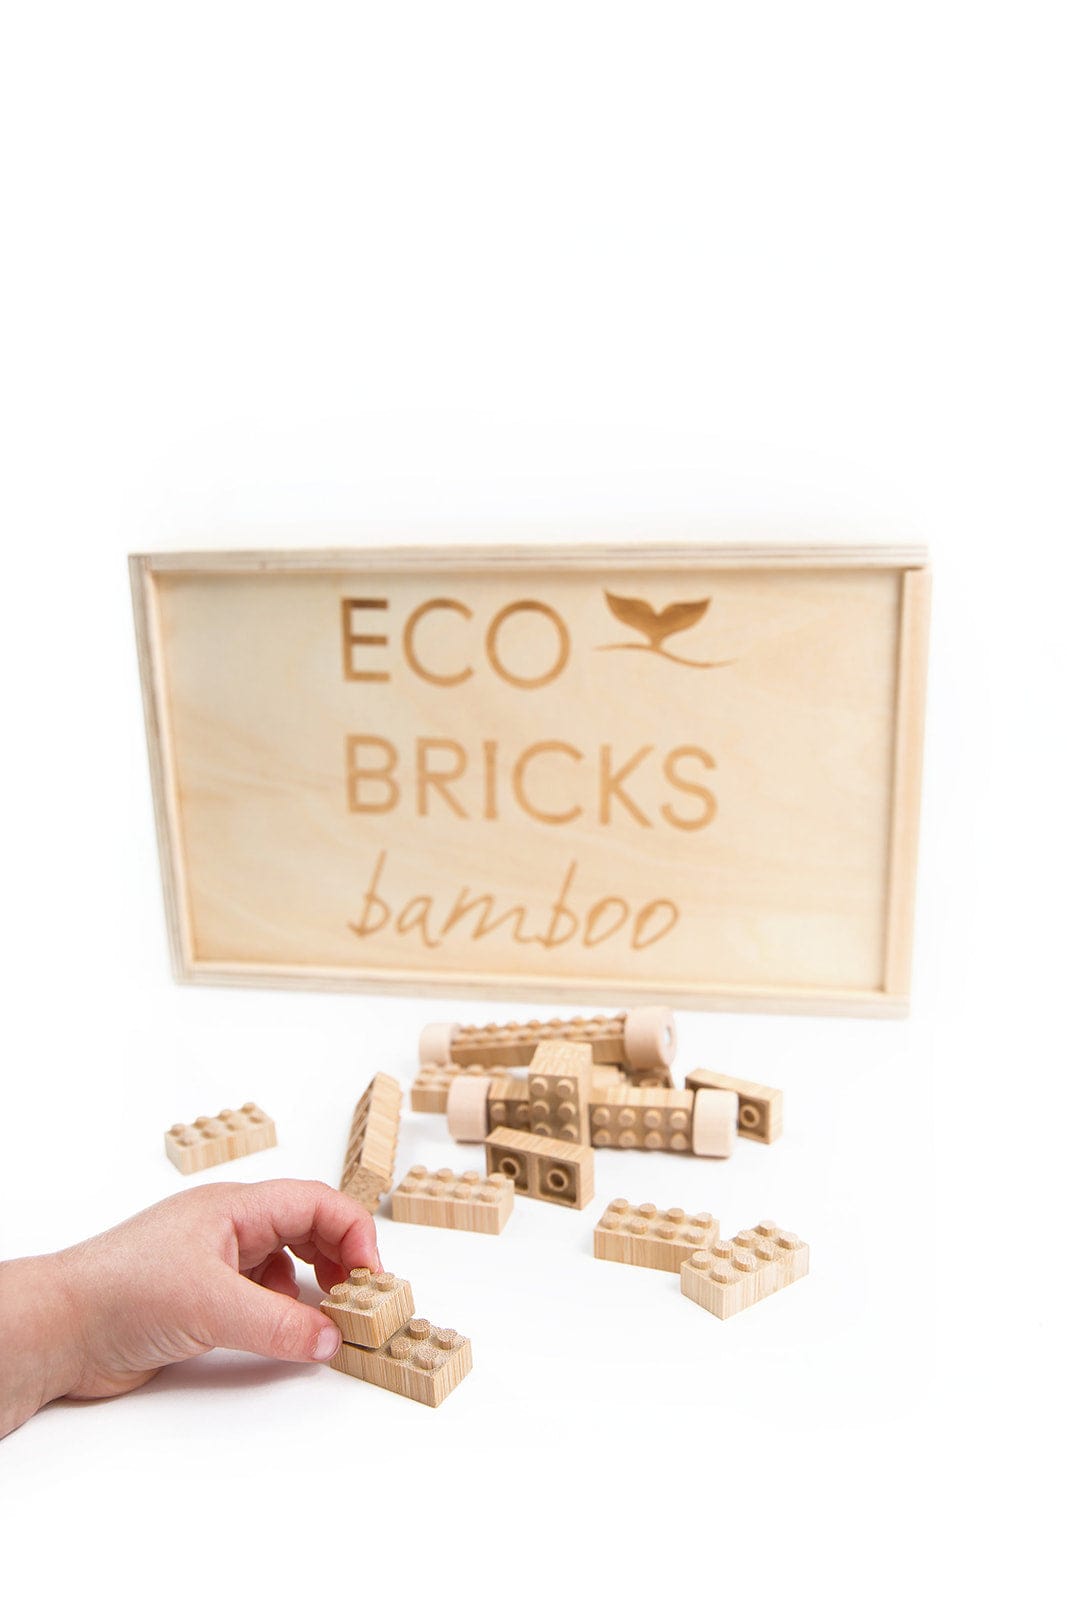 Eco-Bricks Bamboo 90pcs